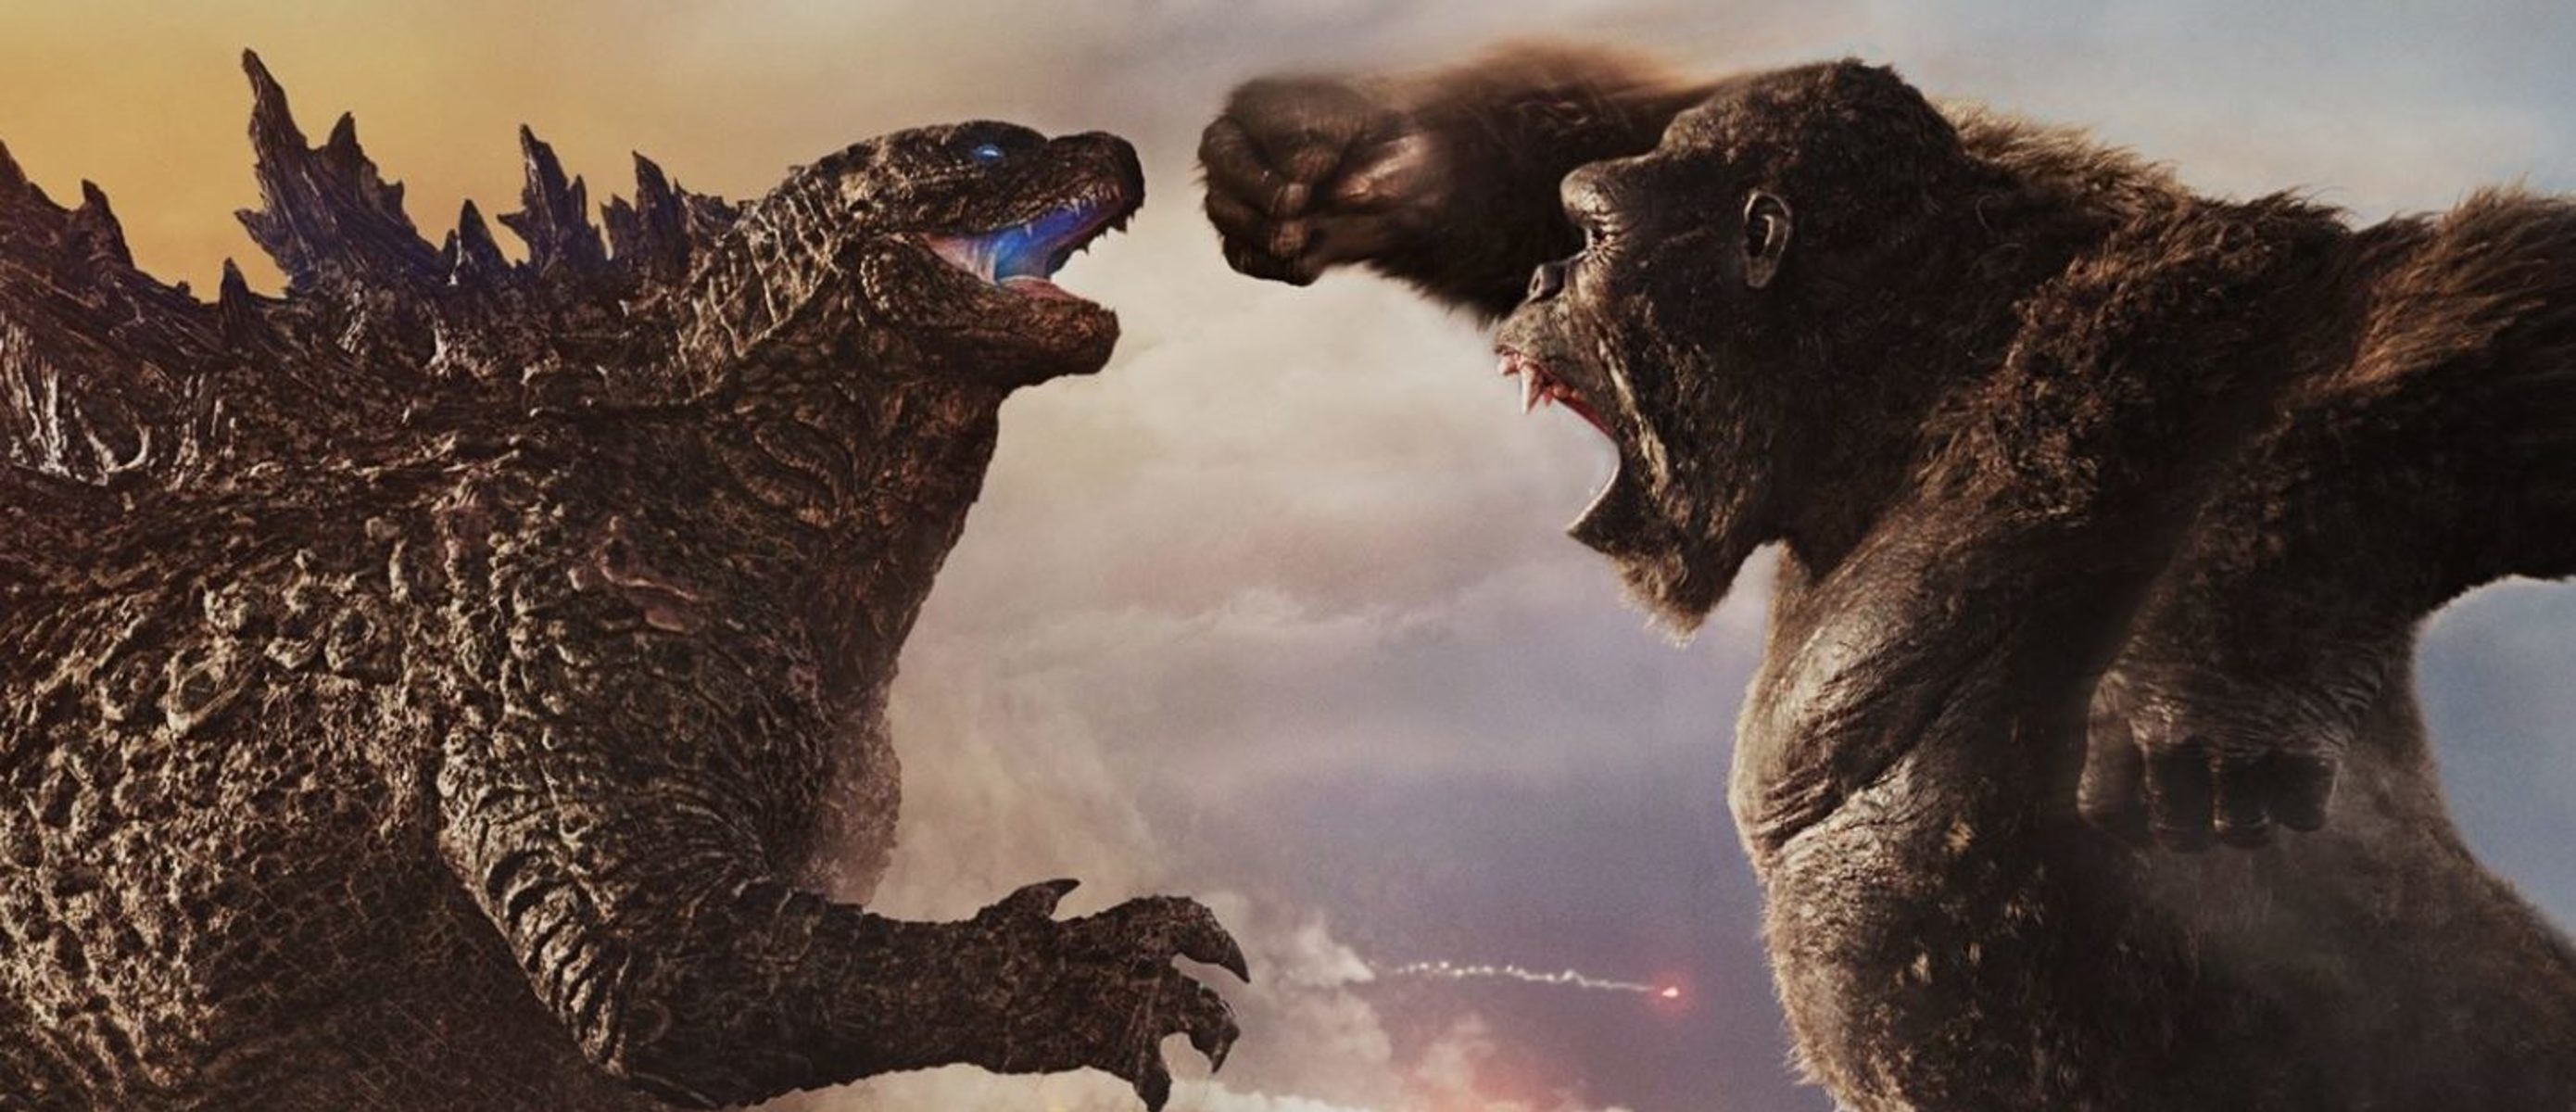 Godzilla x king kong. Годзилла против Конга. King против Годзилла Конга 2021.